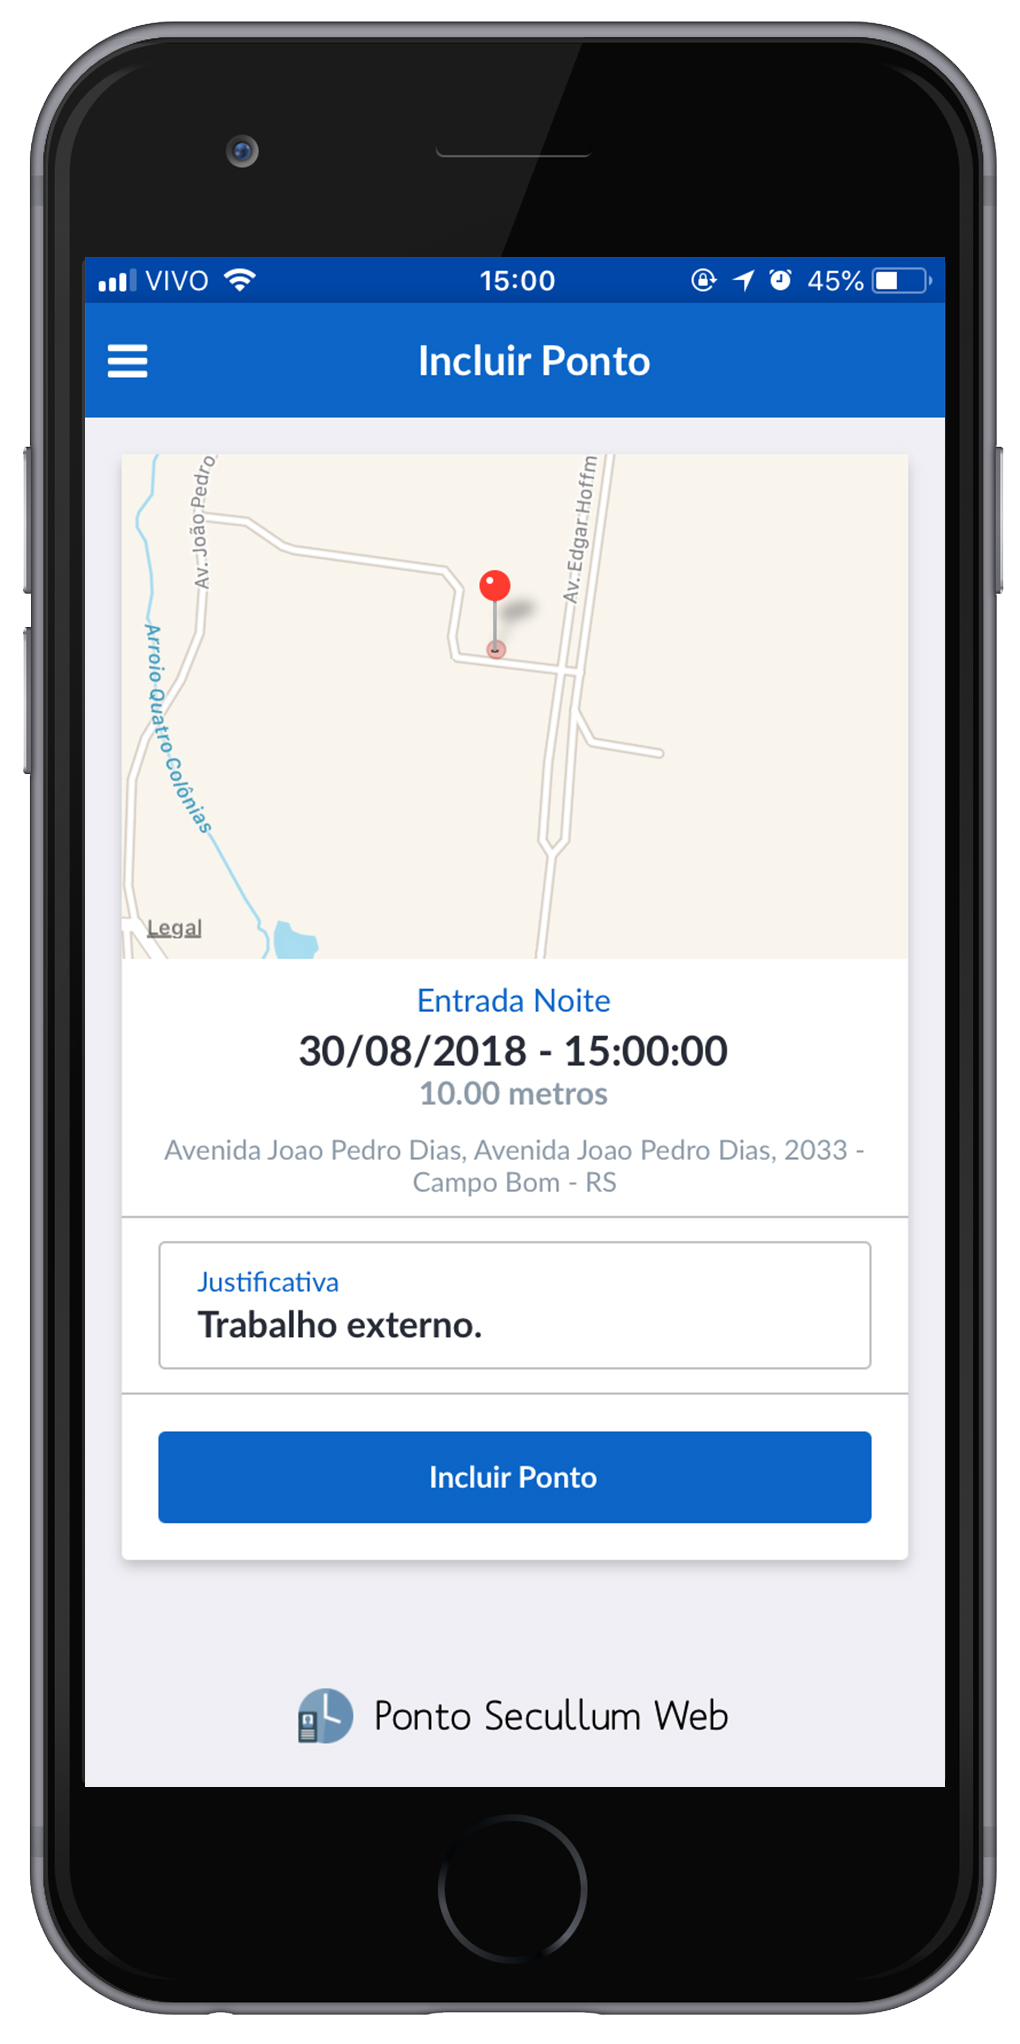 ARTE APLICATIVO COM PESSOA PONTO SECULLUM WEB - permite marcação de potno com geolocalização pelo sistema / app